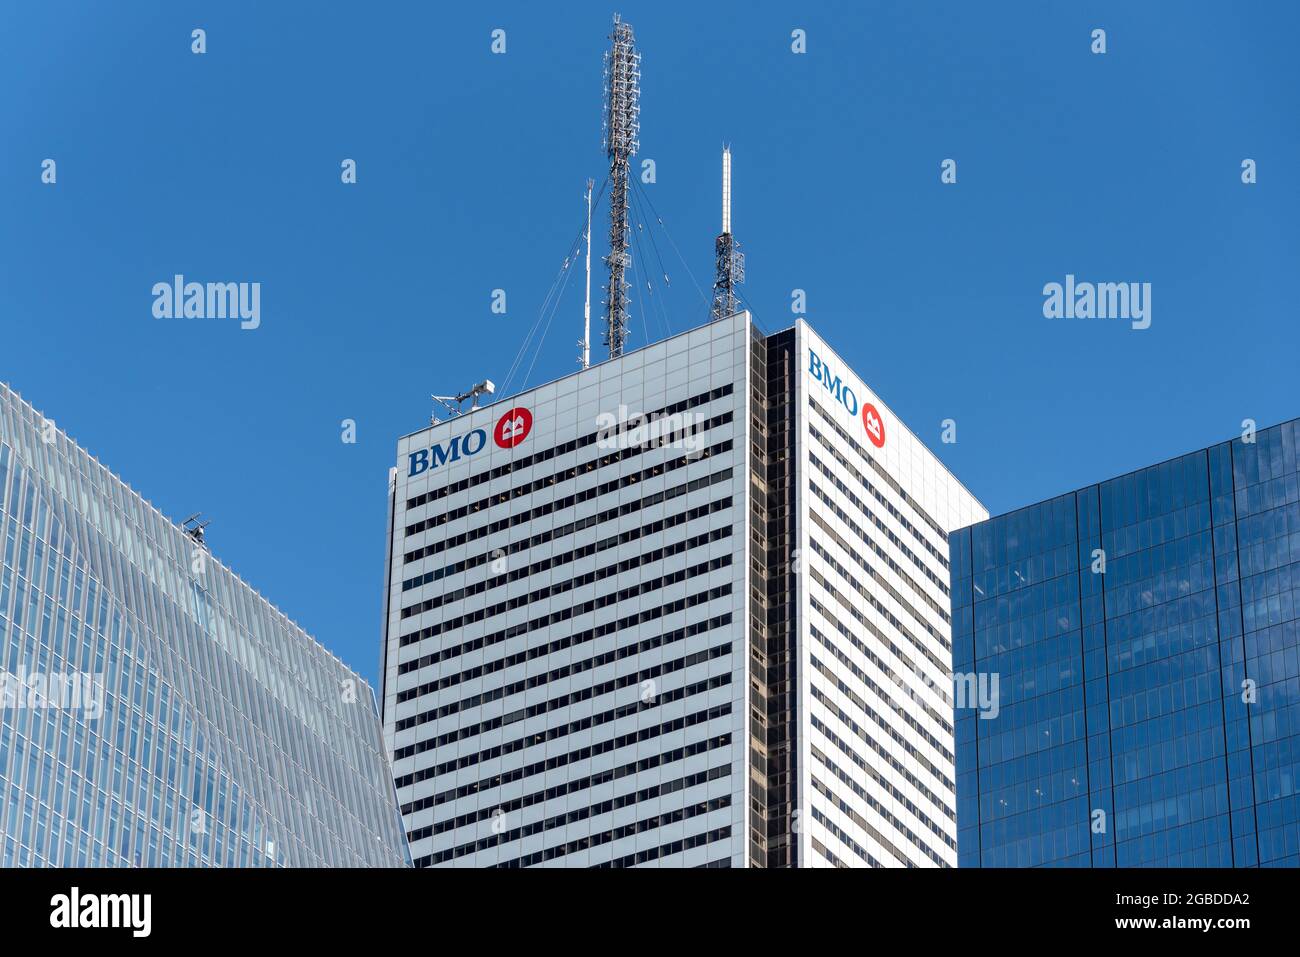 Logotipo del Banco de Montreal o BMO en la parte superior de una torre de rascacielos en el distrito financiero de Toronto, Canadá Foto de stock